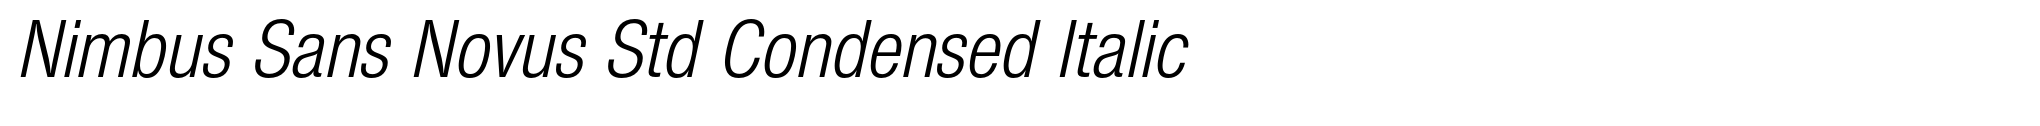 Nimbus Sans Novus Std Condensed Italic image